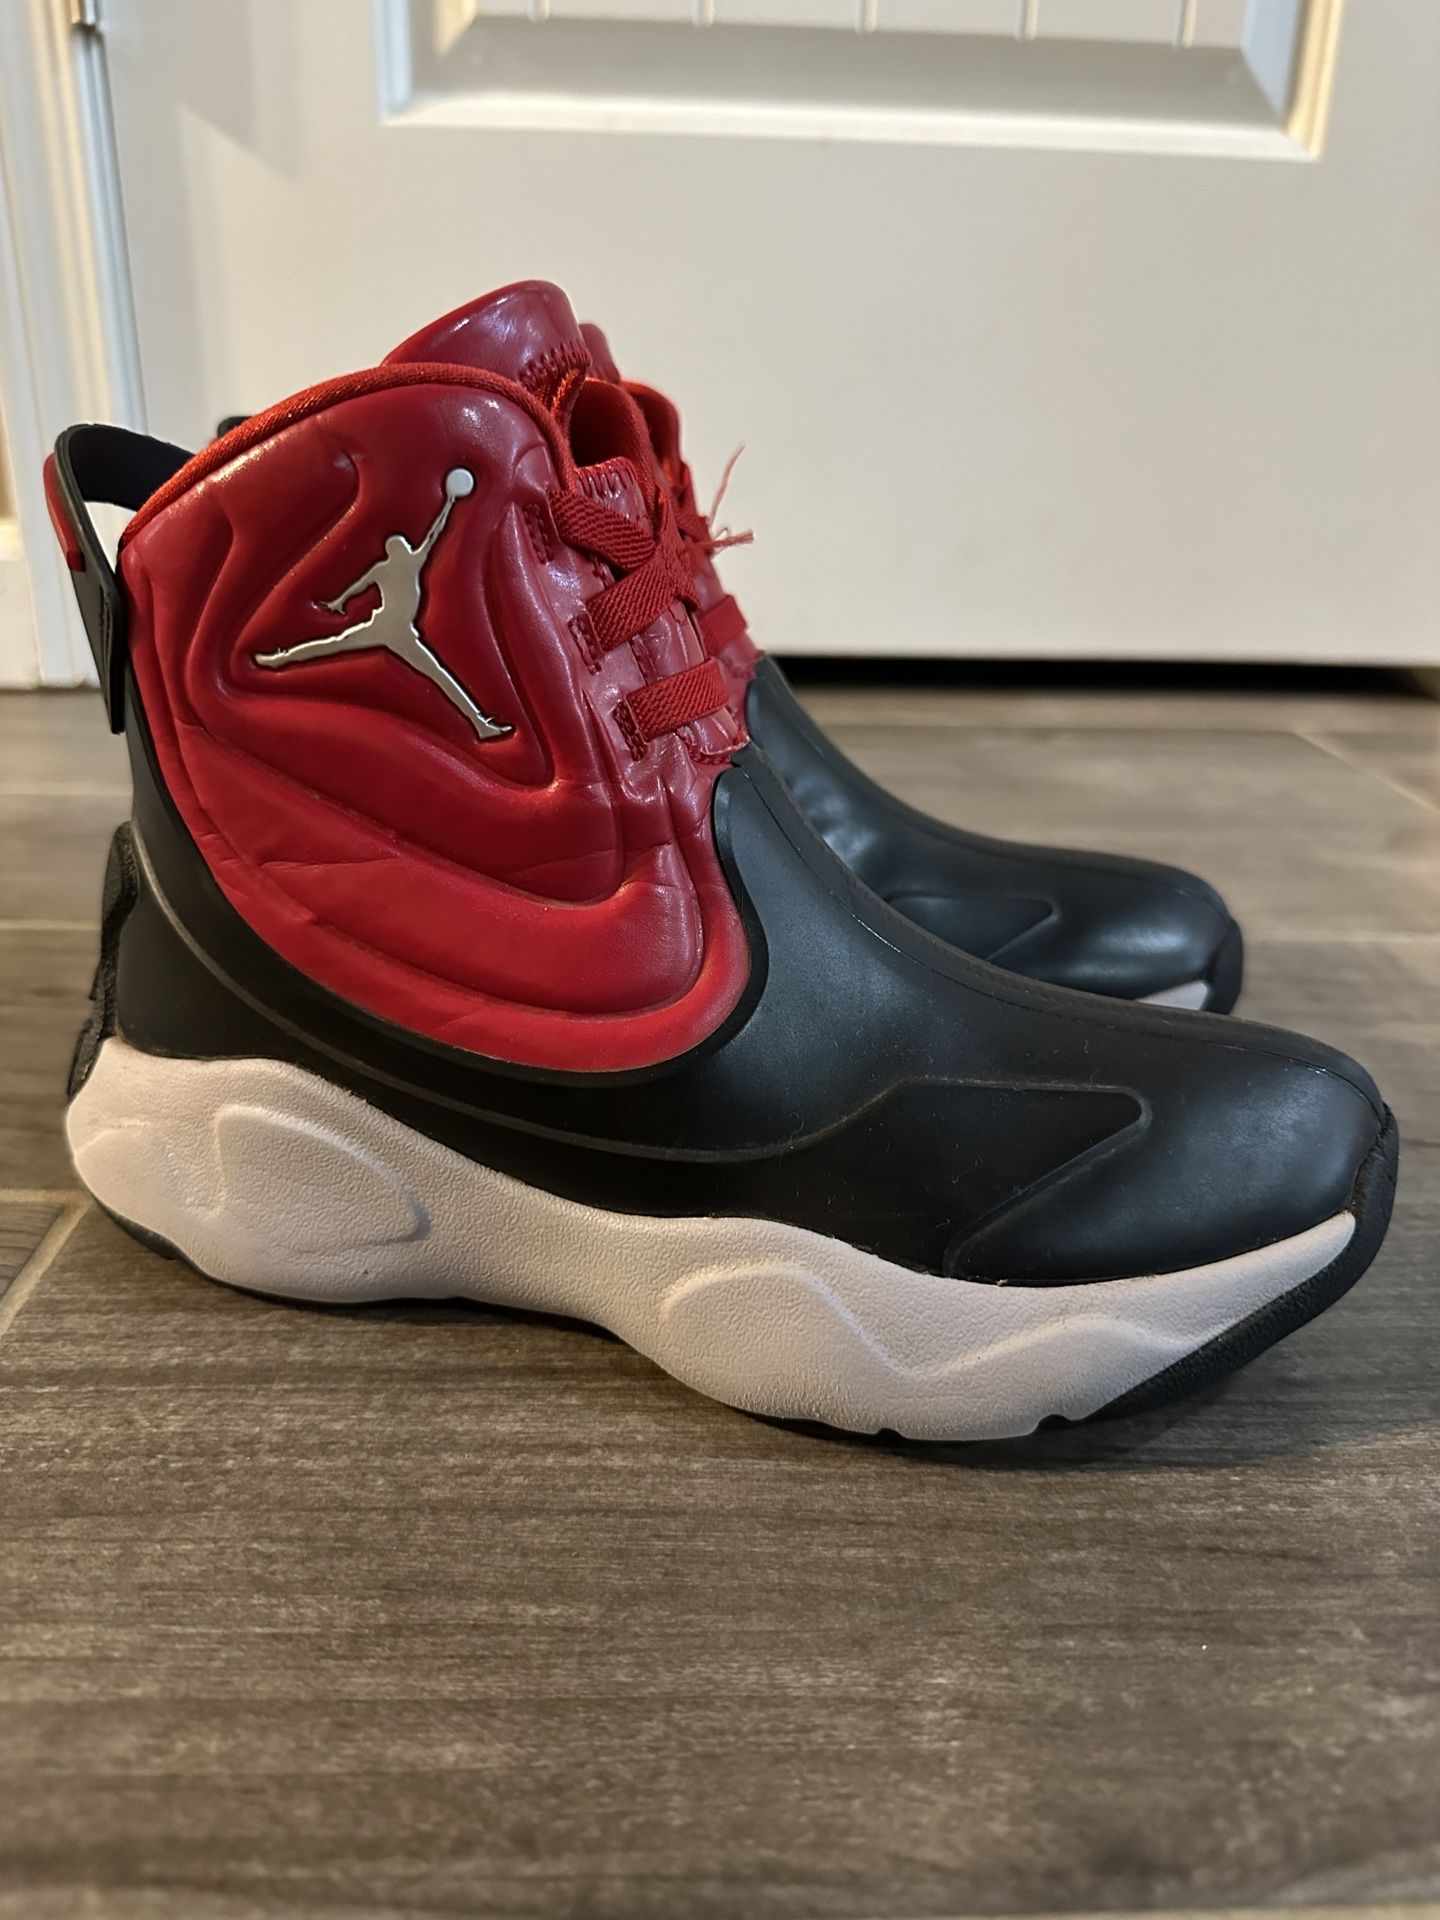 Nike Jordan Boots Waterproof 3Y